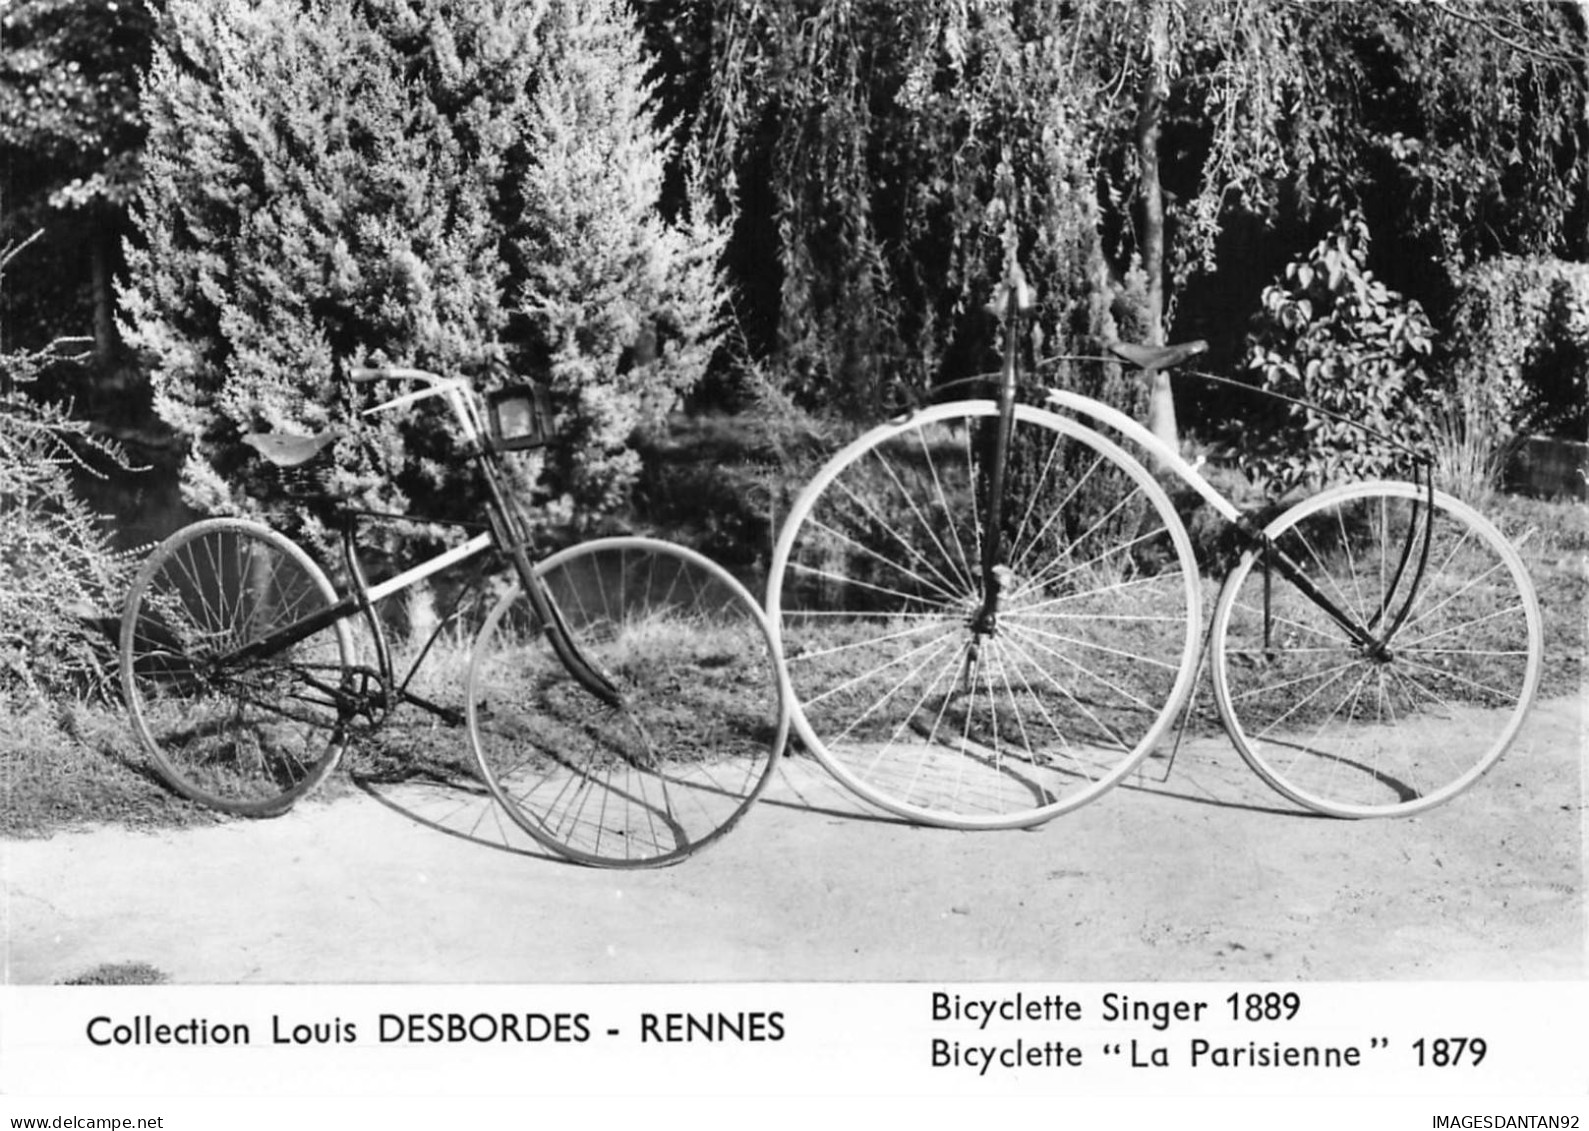 35 RENNES AA#DC066 VELOS BICYCLETTES SINGER 1889 ET LA PARISIENNE 1879 COLLECTION LOUIS DESBORDES - Rennes